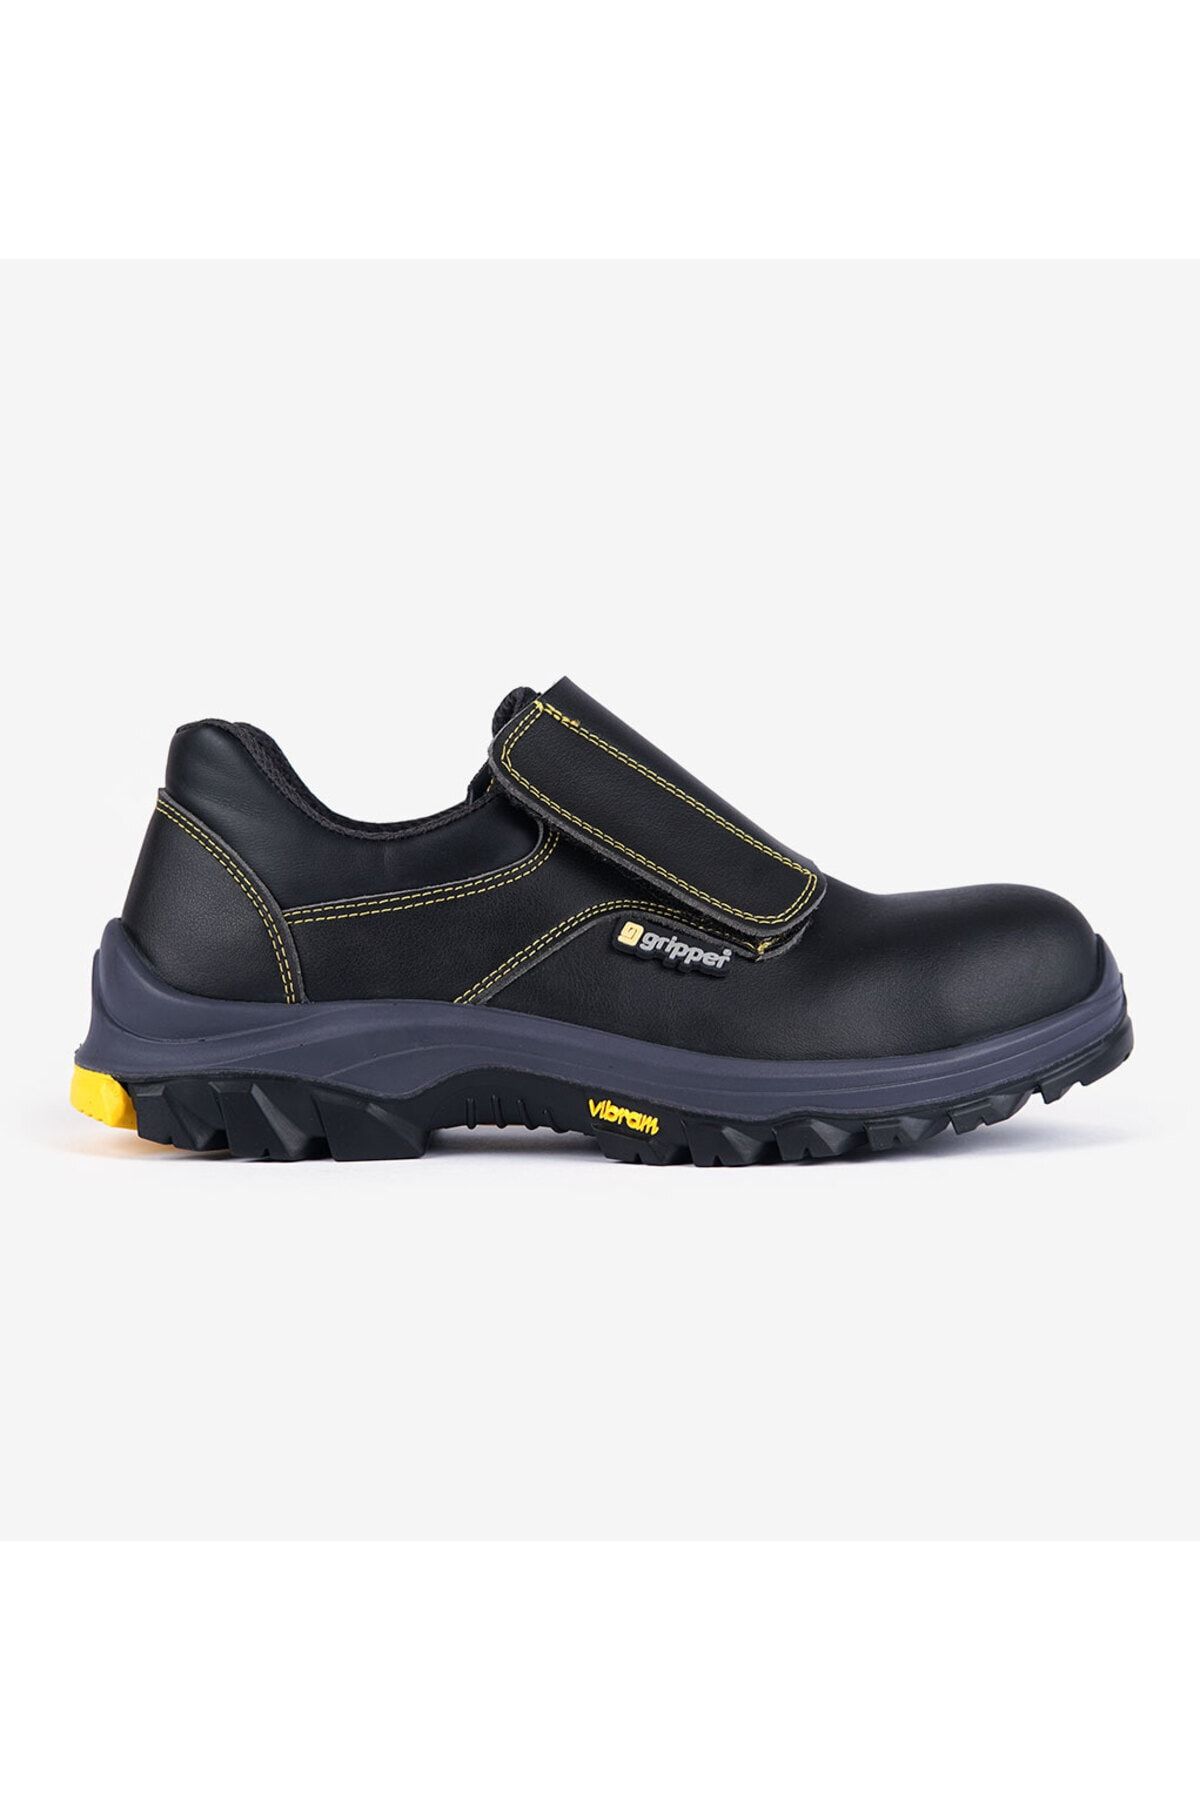 Mekap /gripper Gpr 34 Rs2 Siyah Deri Kompozit Vibram Yanmaz Hro Taban Kaynakçı Iş Güvenlik Ayakkabısı